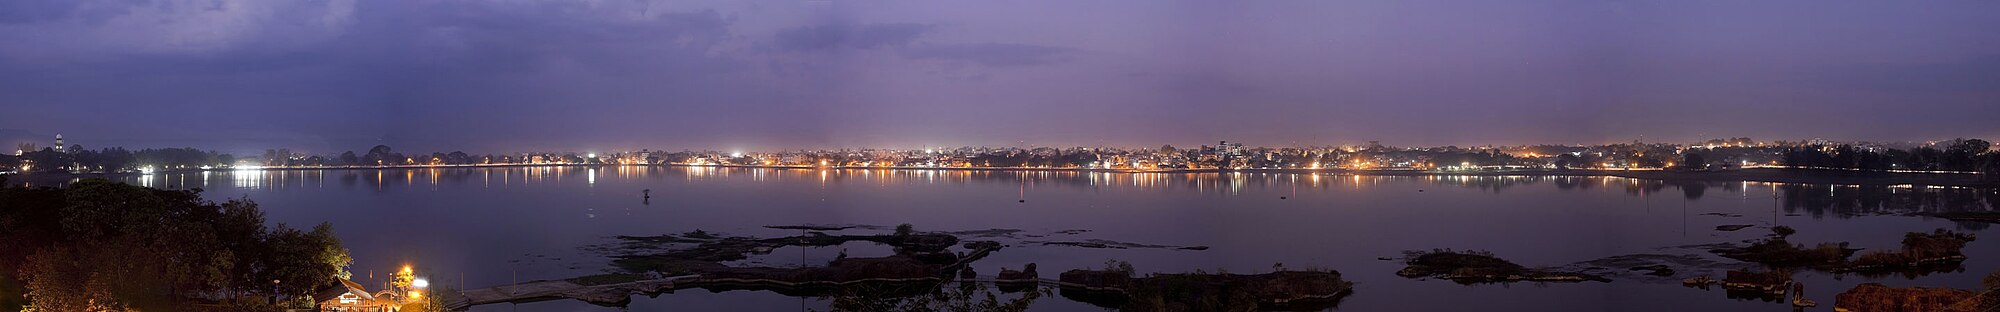 Kolhapur City at night from Rankala lake